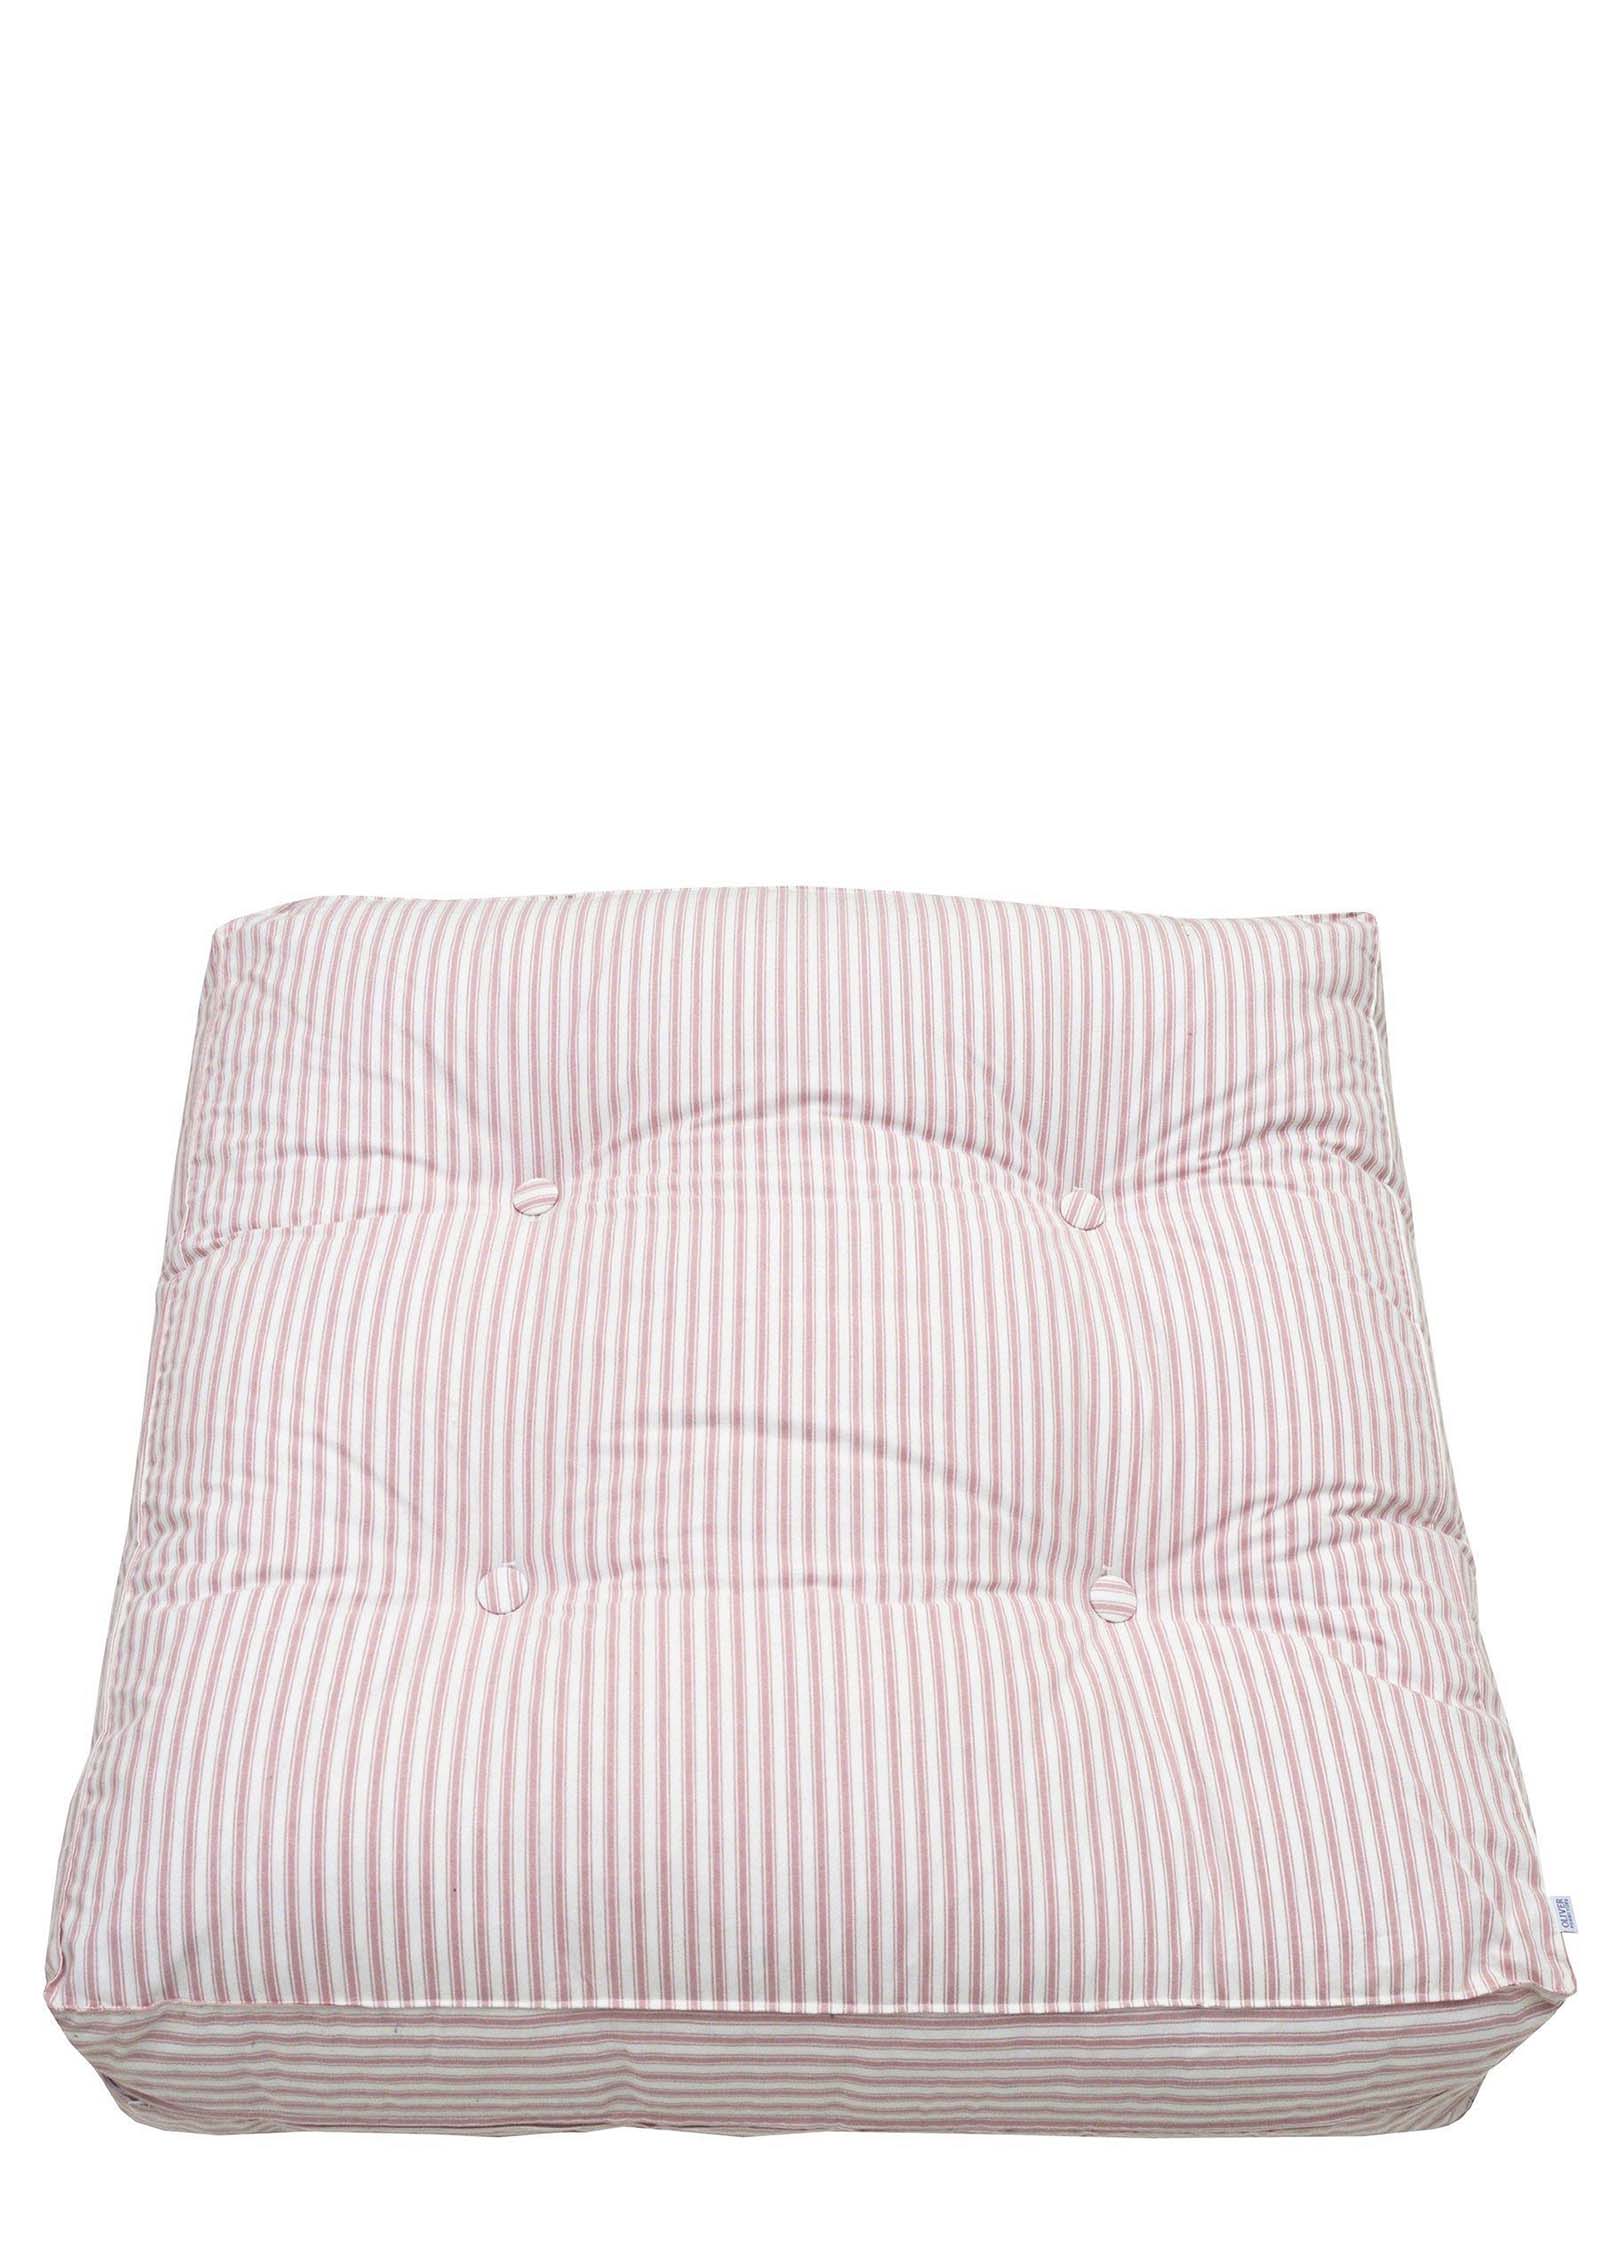 Oliver Furniture Seaside Bodenkissen für Hochbett rosa Streifen